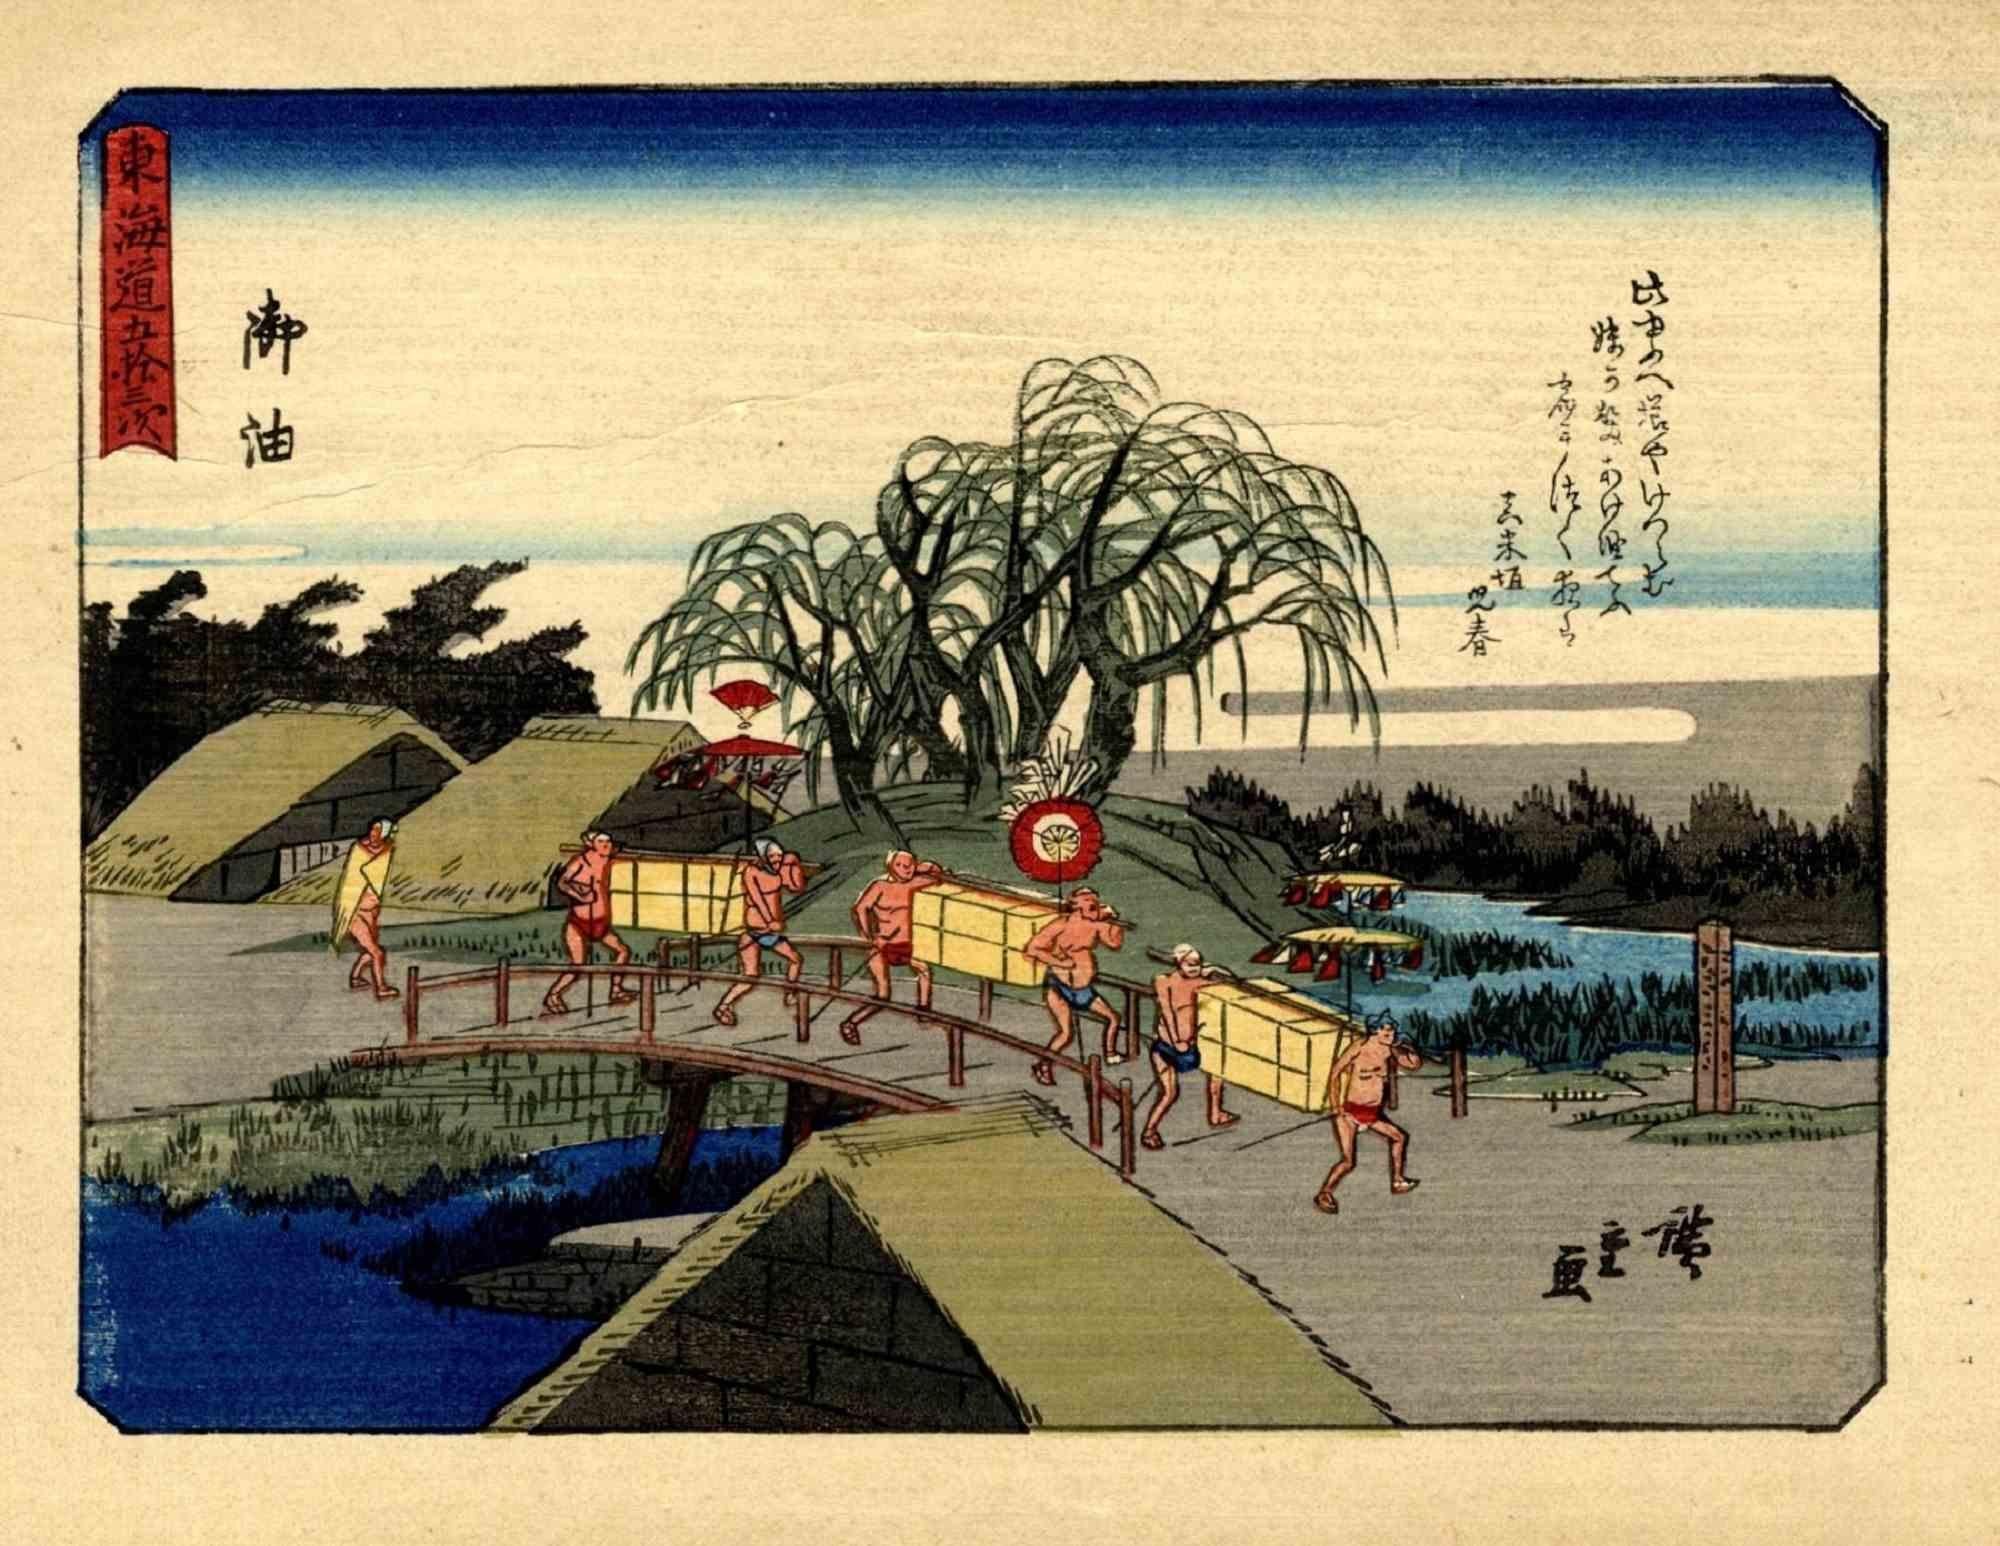 Kyoka-Tokaido est une œuvre d'art moderne originale réalisée d'après Utagawa Hiroshige (1797 - 12 octobre 1858) en 1925.

Gravure sur bois Chuban Yokoe Format. Signé : Hiroshige ga. Réimpression de 1925.

Réimpression réduite de la série "Tokaido